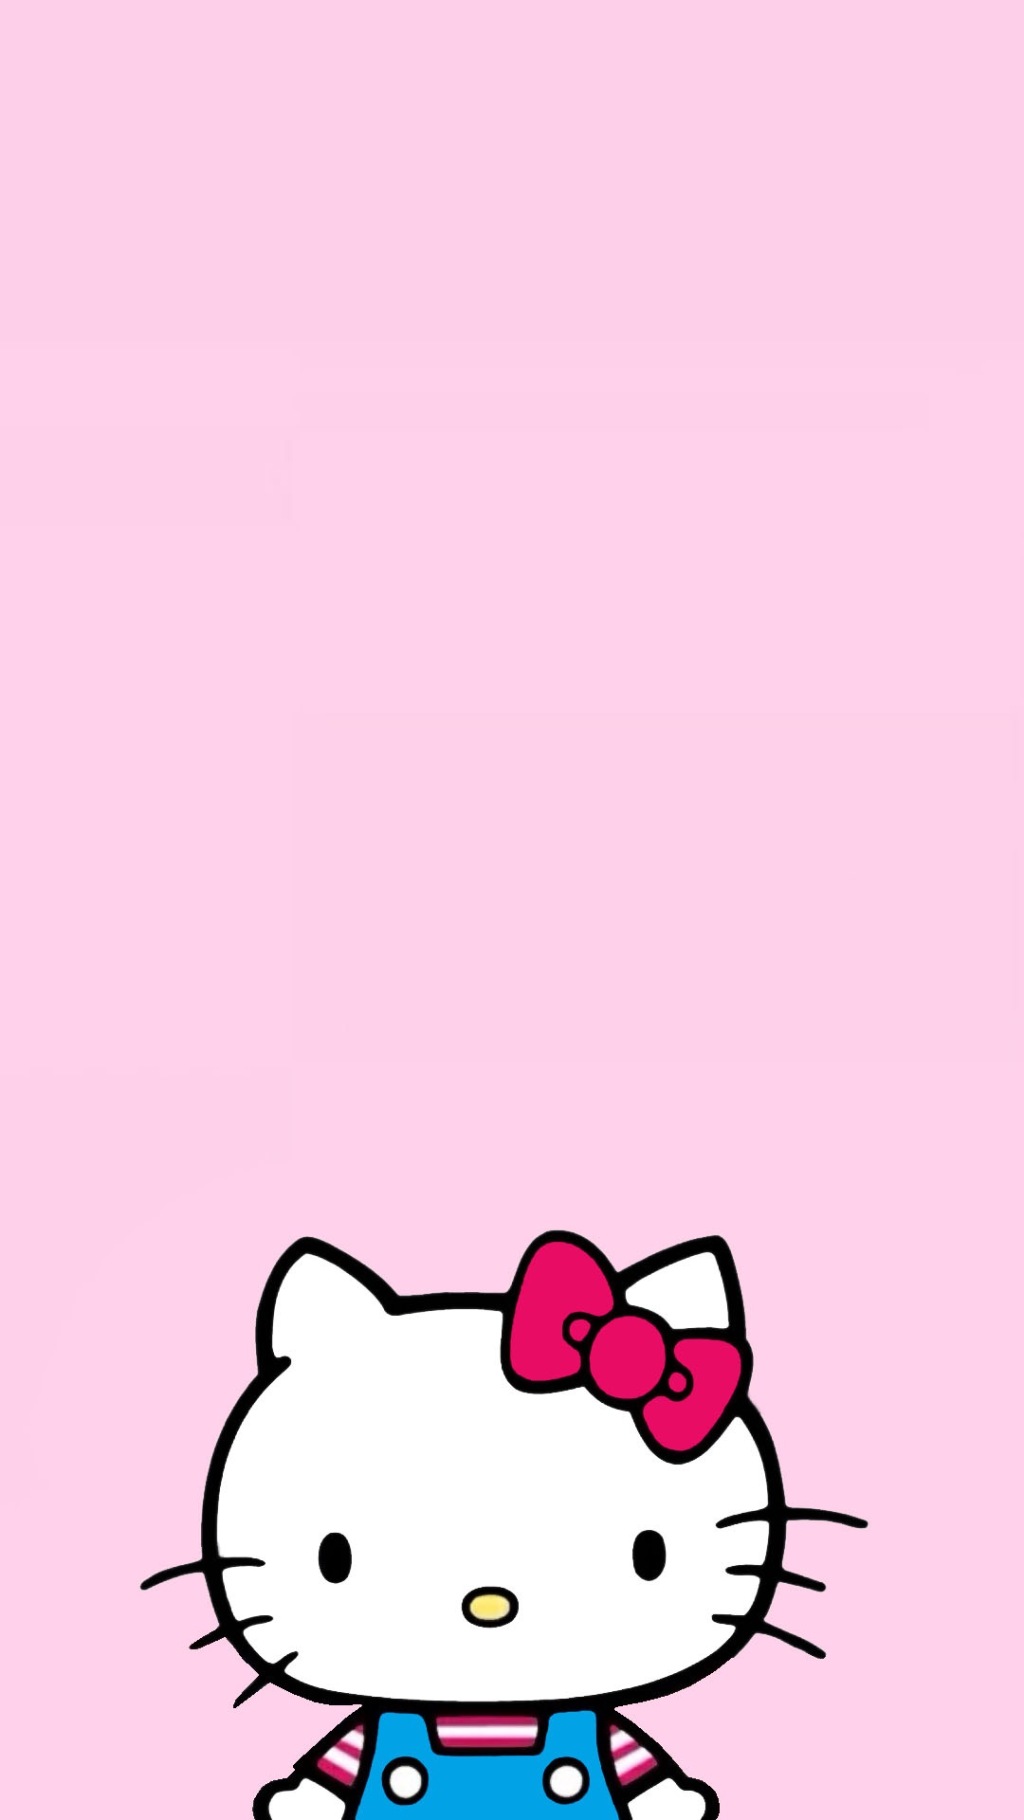 Hello Kitty手机壁纸粉色可爱hellokitty手机主题壁纸 手机壁纸 优美图